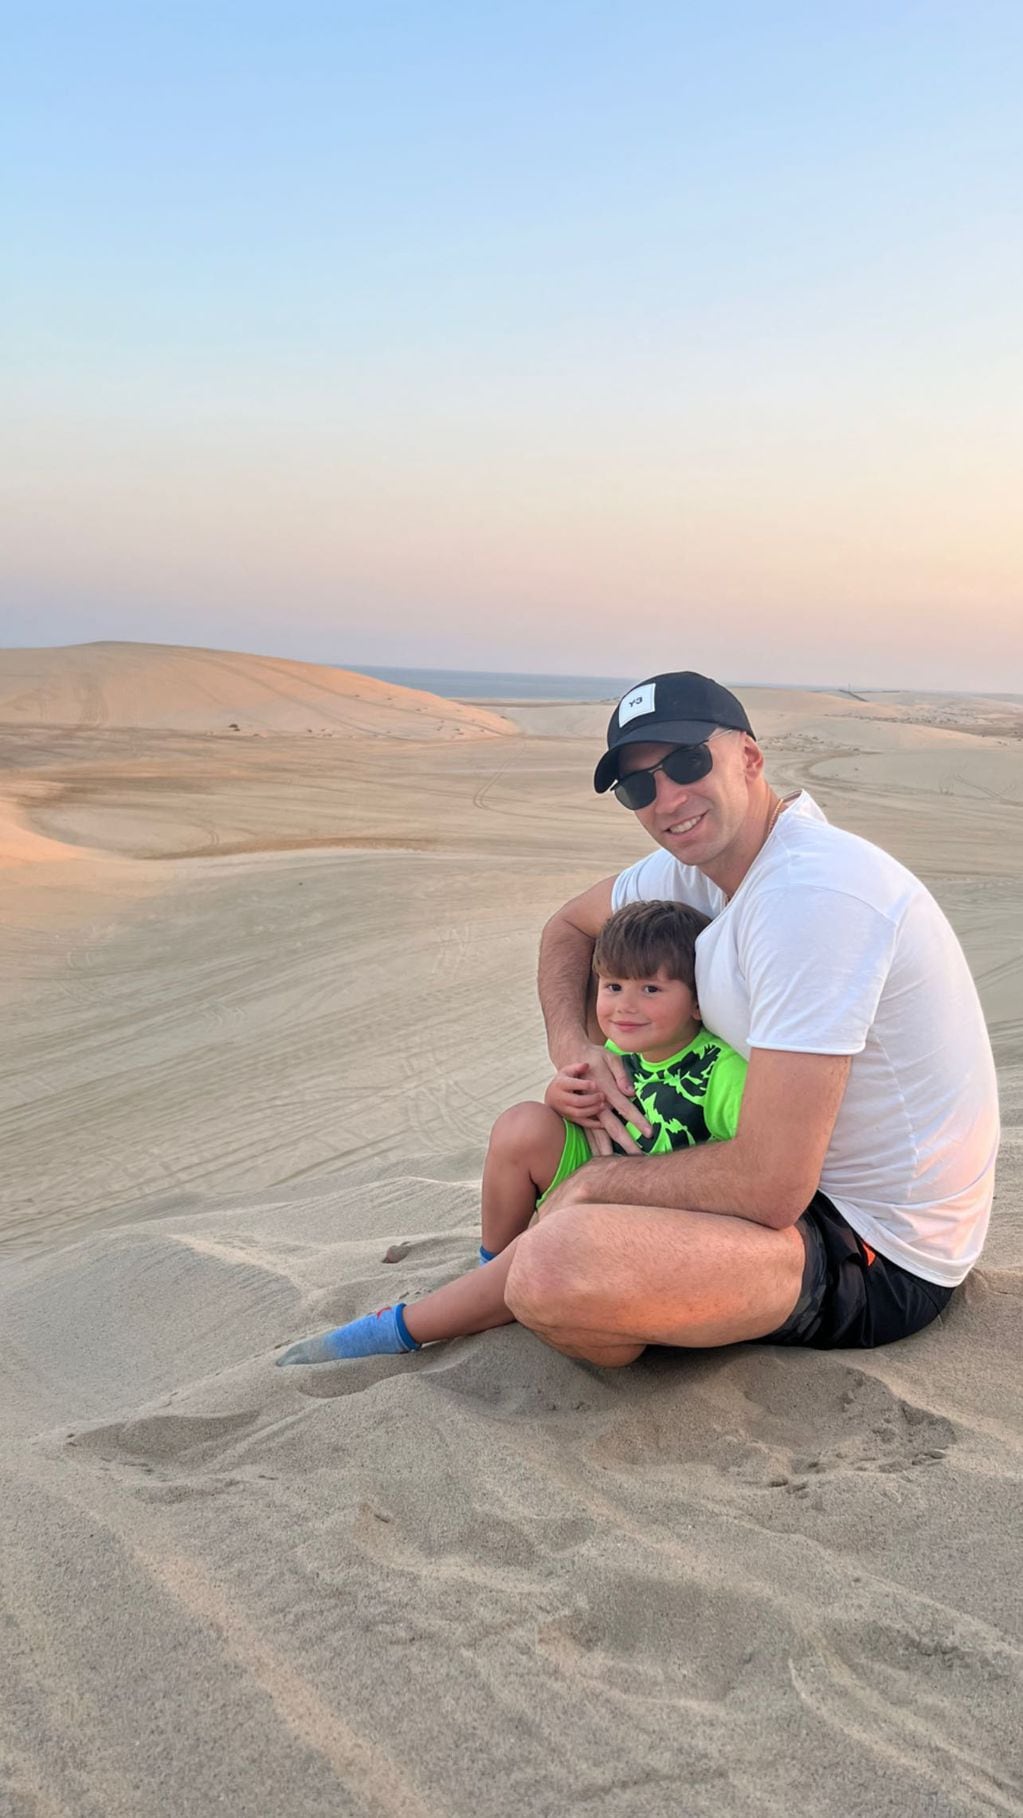 El "Dibu" Martínez y su hijo en el desierto de Qatar